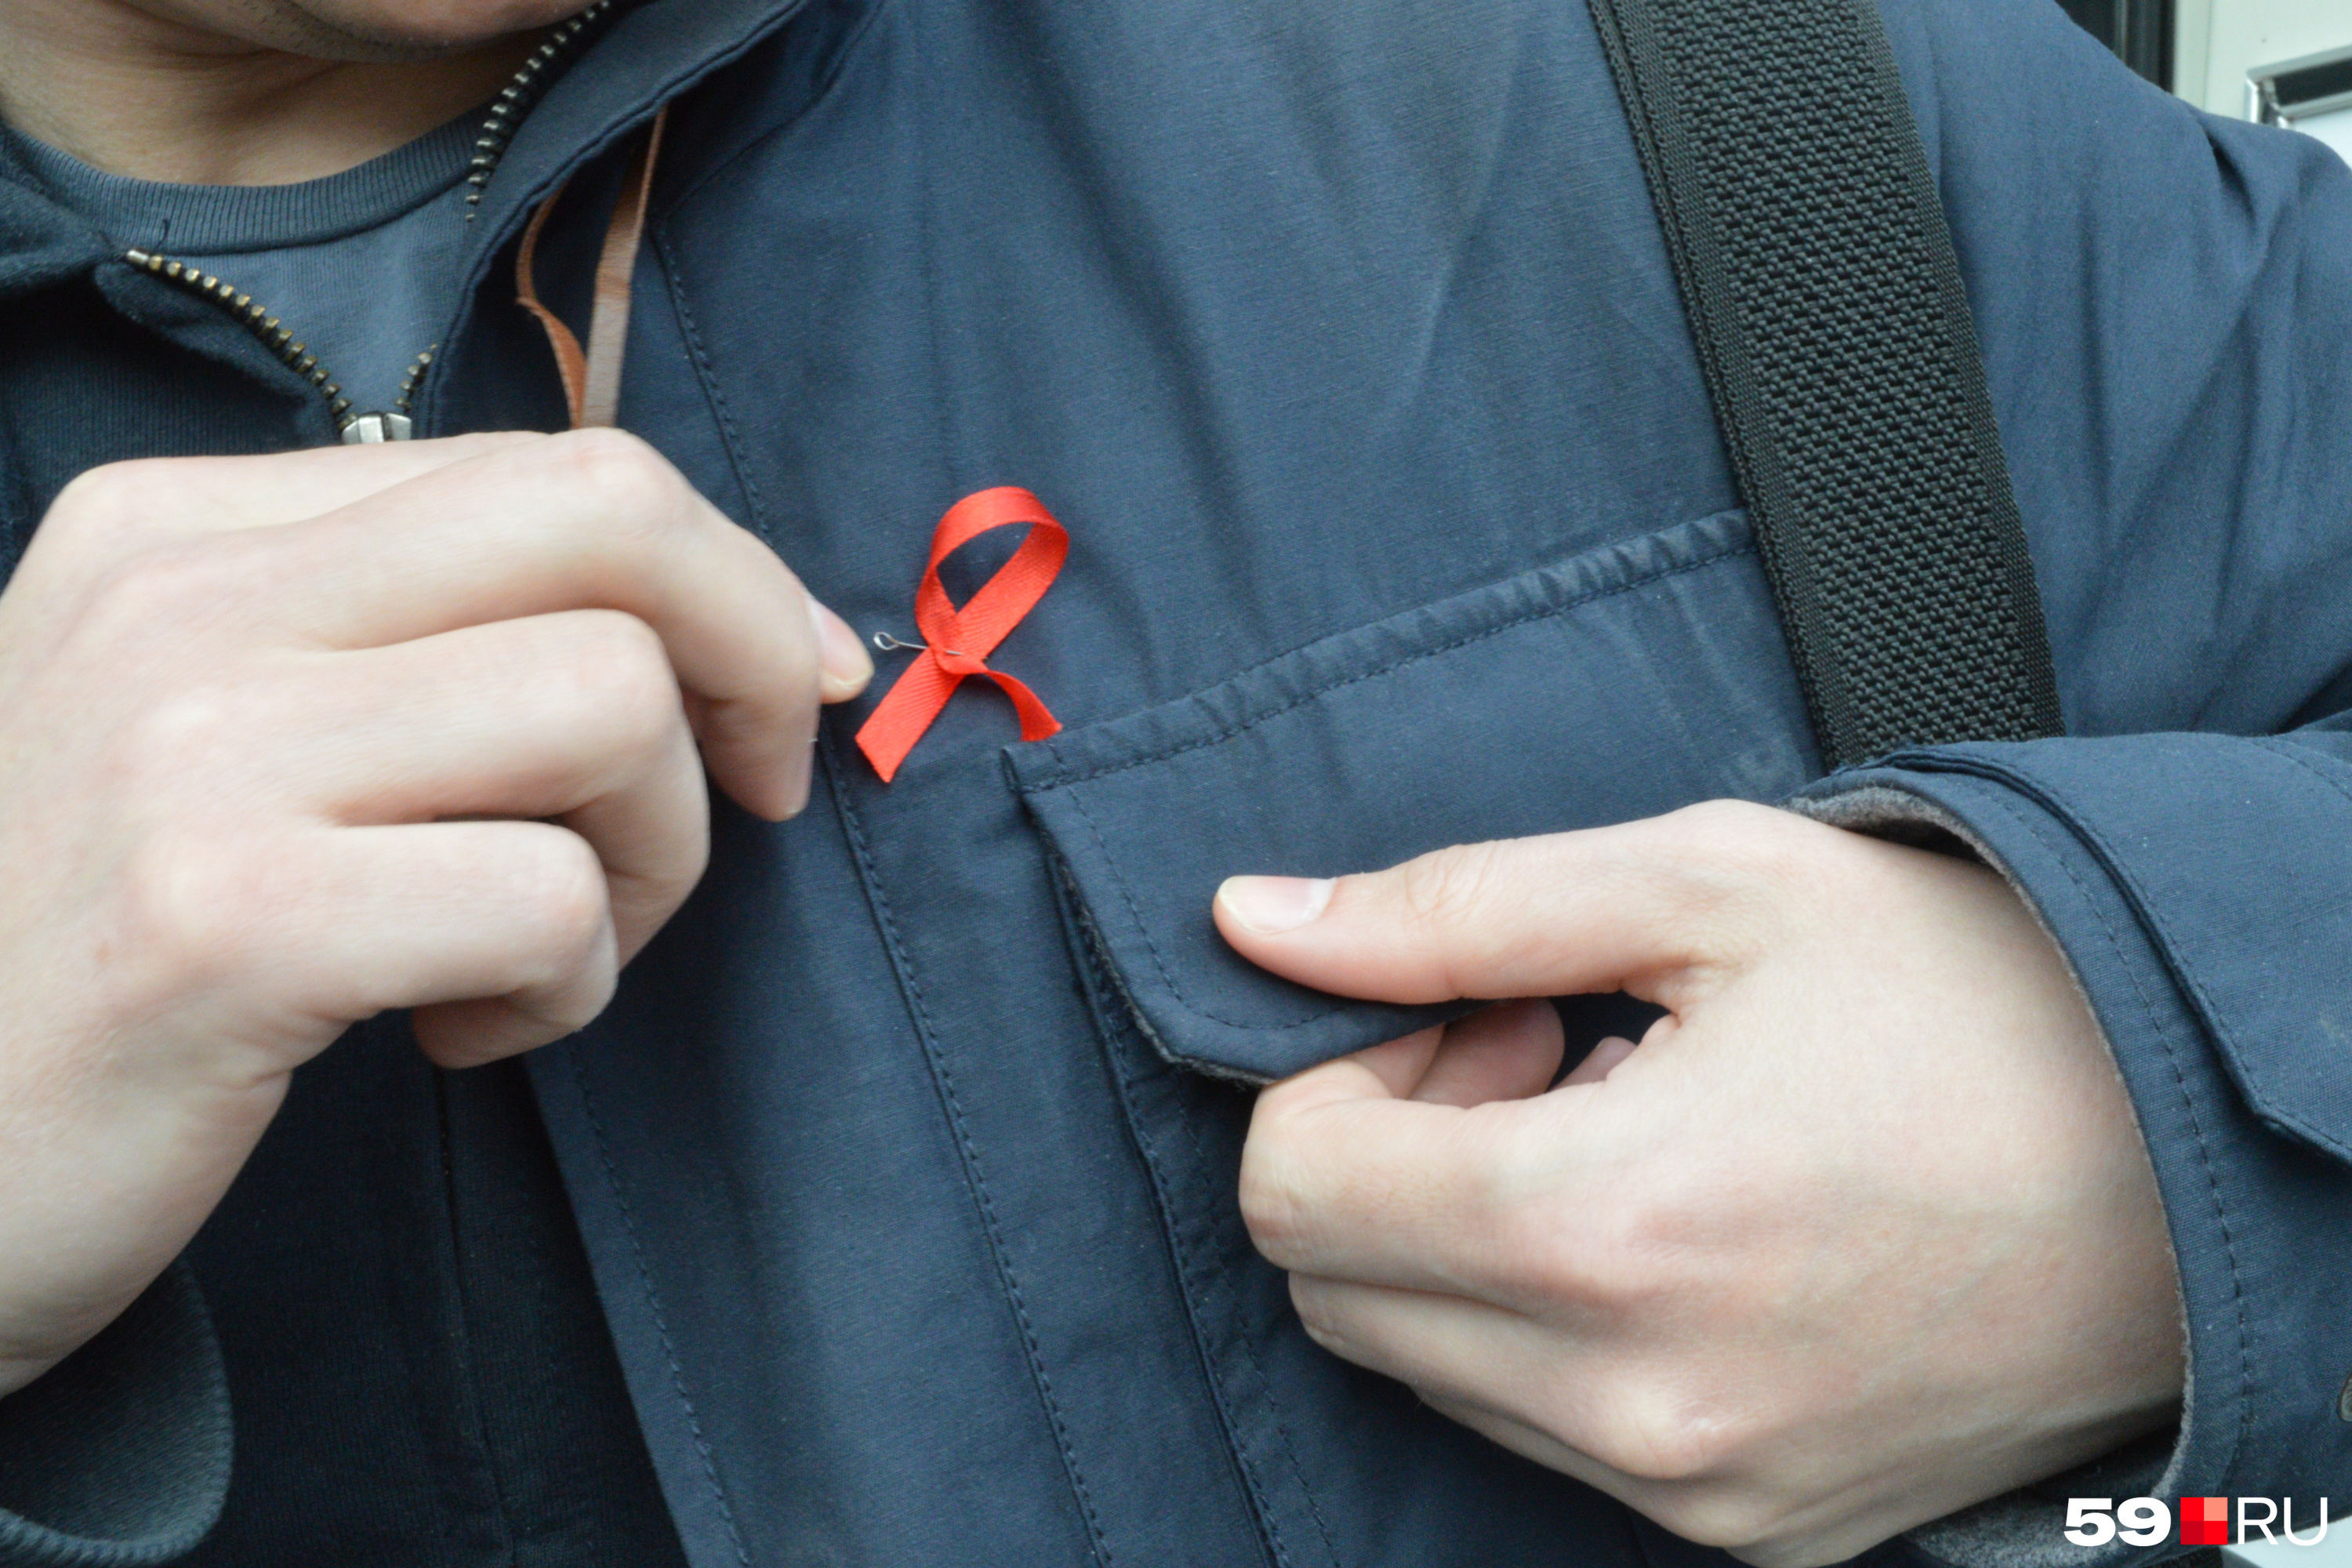 Как снизить риск заражения ВИЧ после секса, можно ли родить здоровых детей  человеку с ВИЧ, когда наступает смерть от ВИЧ, симптомы ВИЧ - 2 декабря  2020 - 59.ru